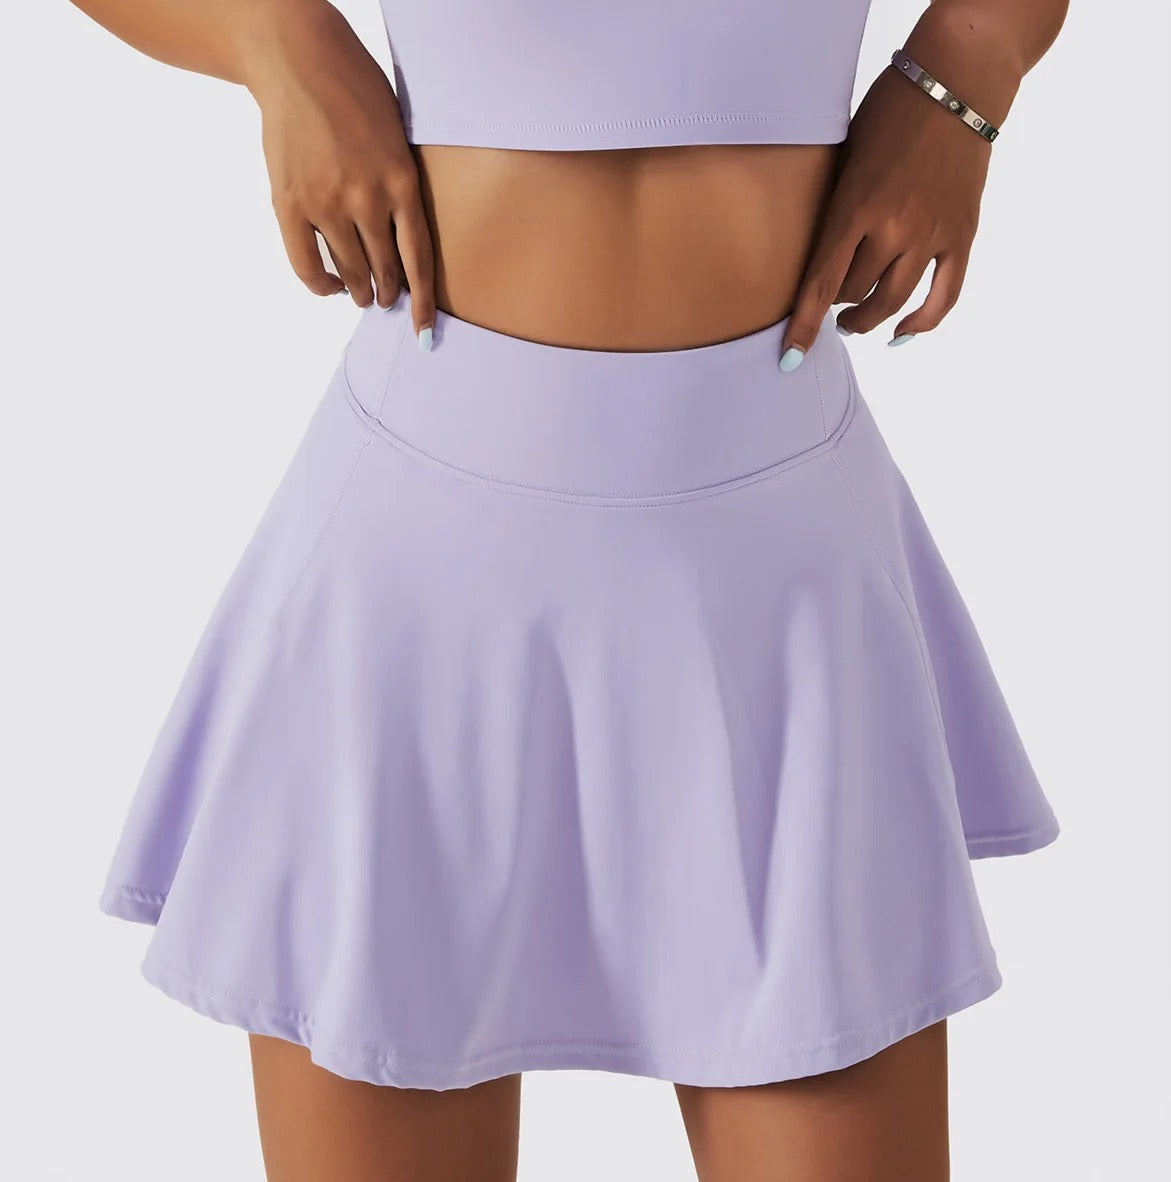 Skort Short-Lined Tennis - Golf Skirt - TBSW